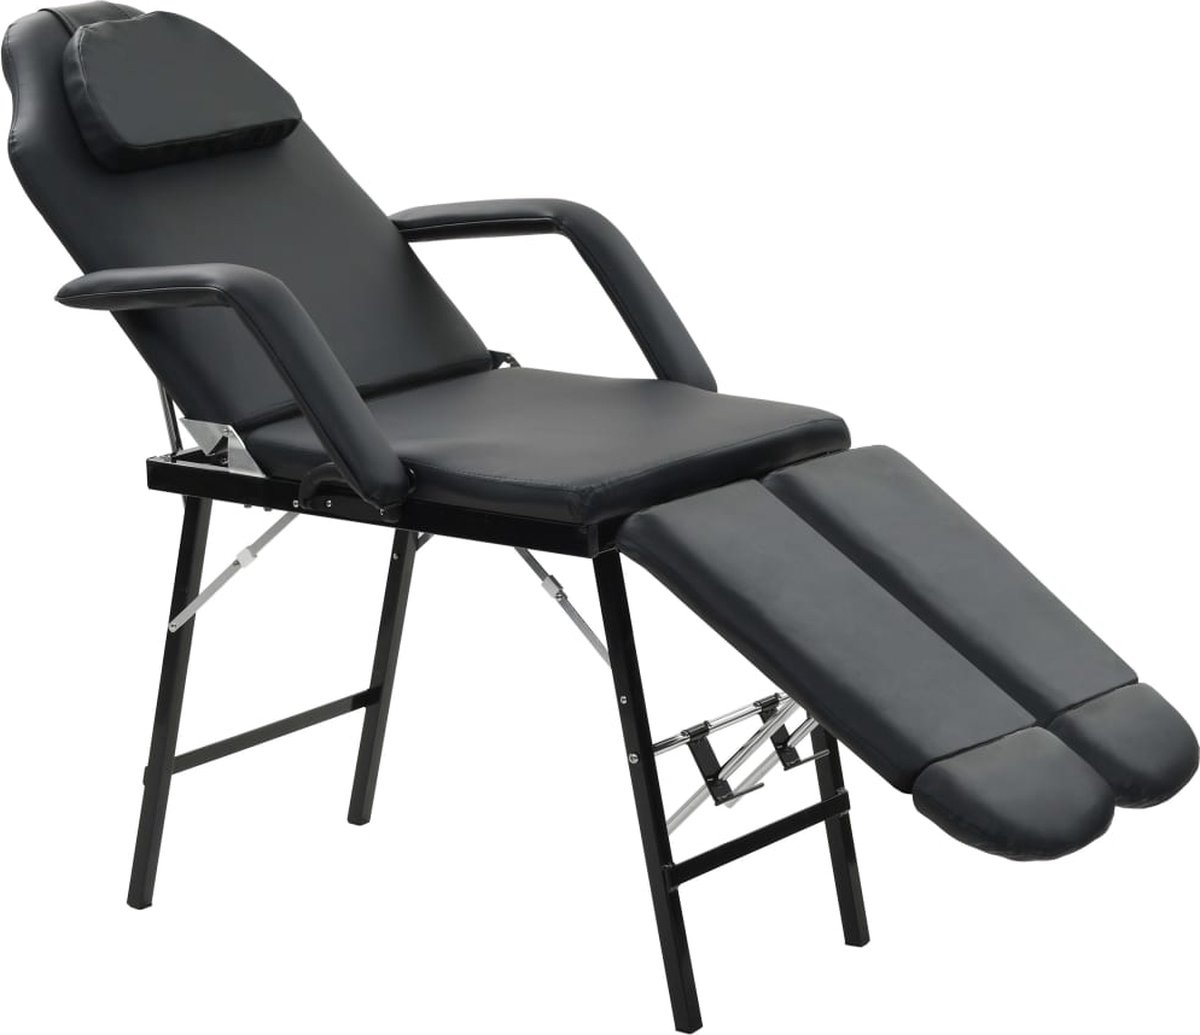 VidaLife Gezichtsbehandelstoel draagbaar 185x78x76 cm kunstleer zwart